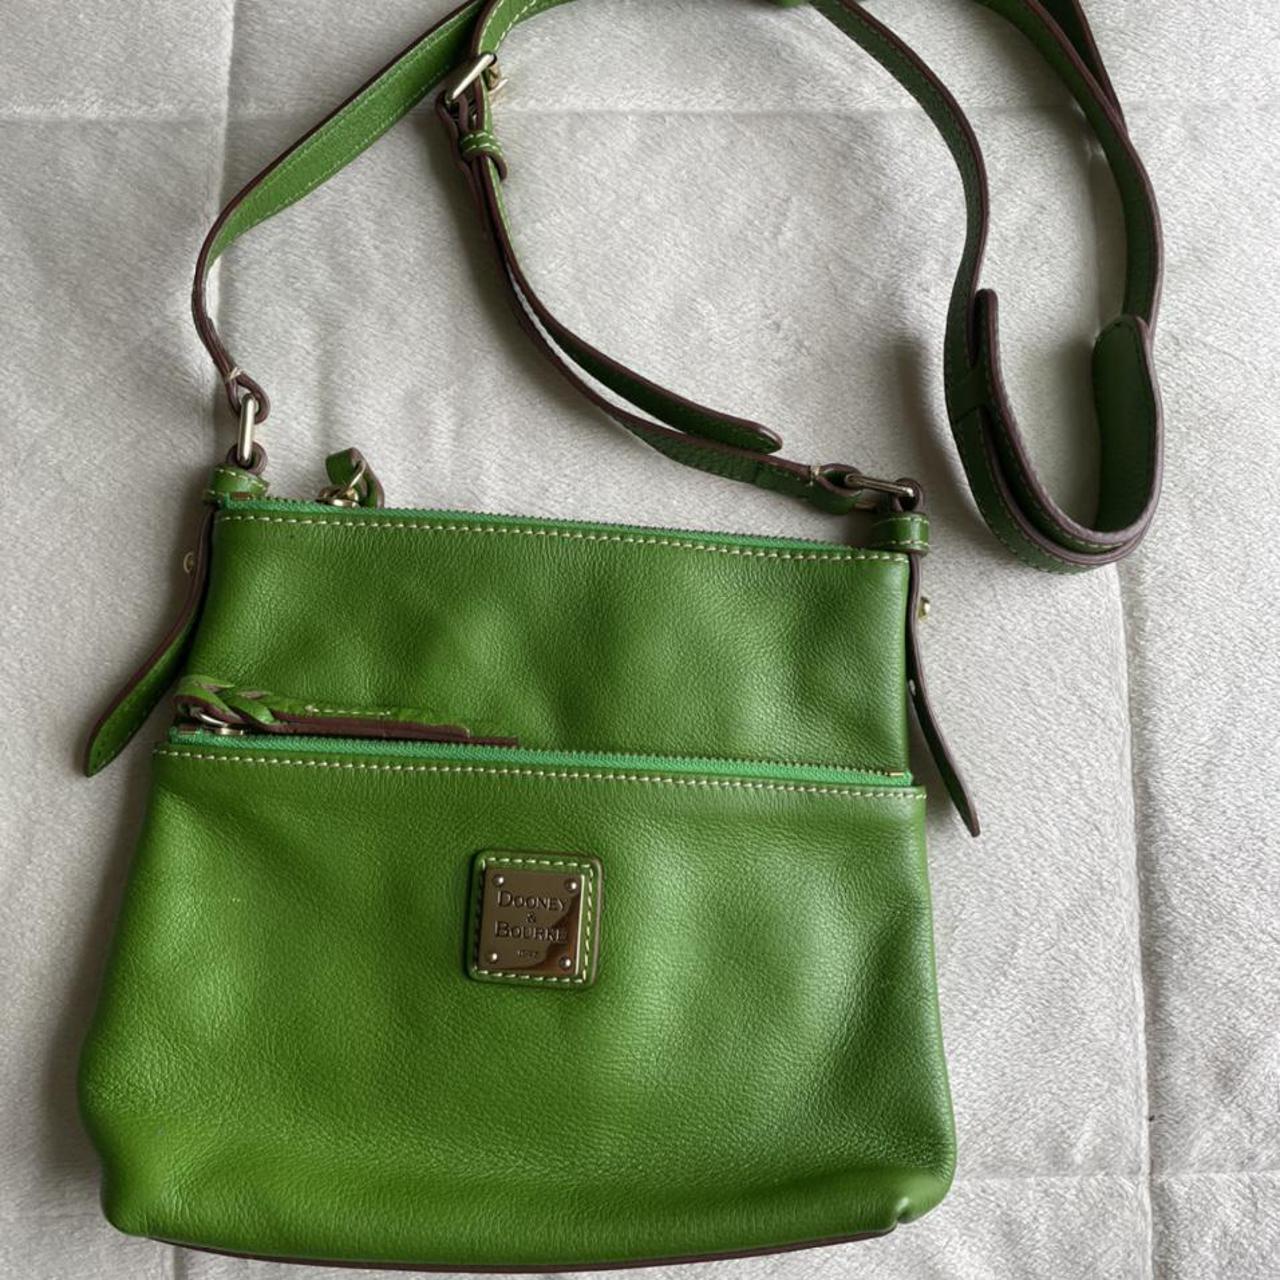 Green Dooney & Bourke side bag Real leather Bag... - Depop